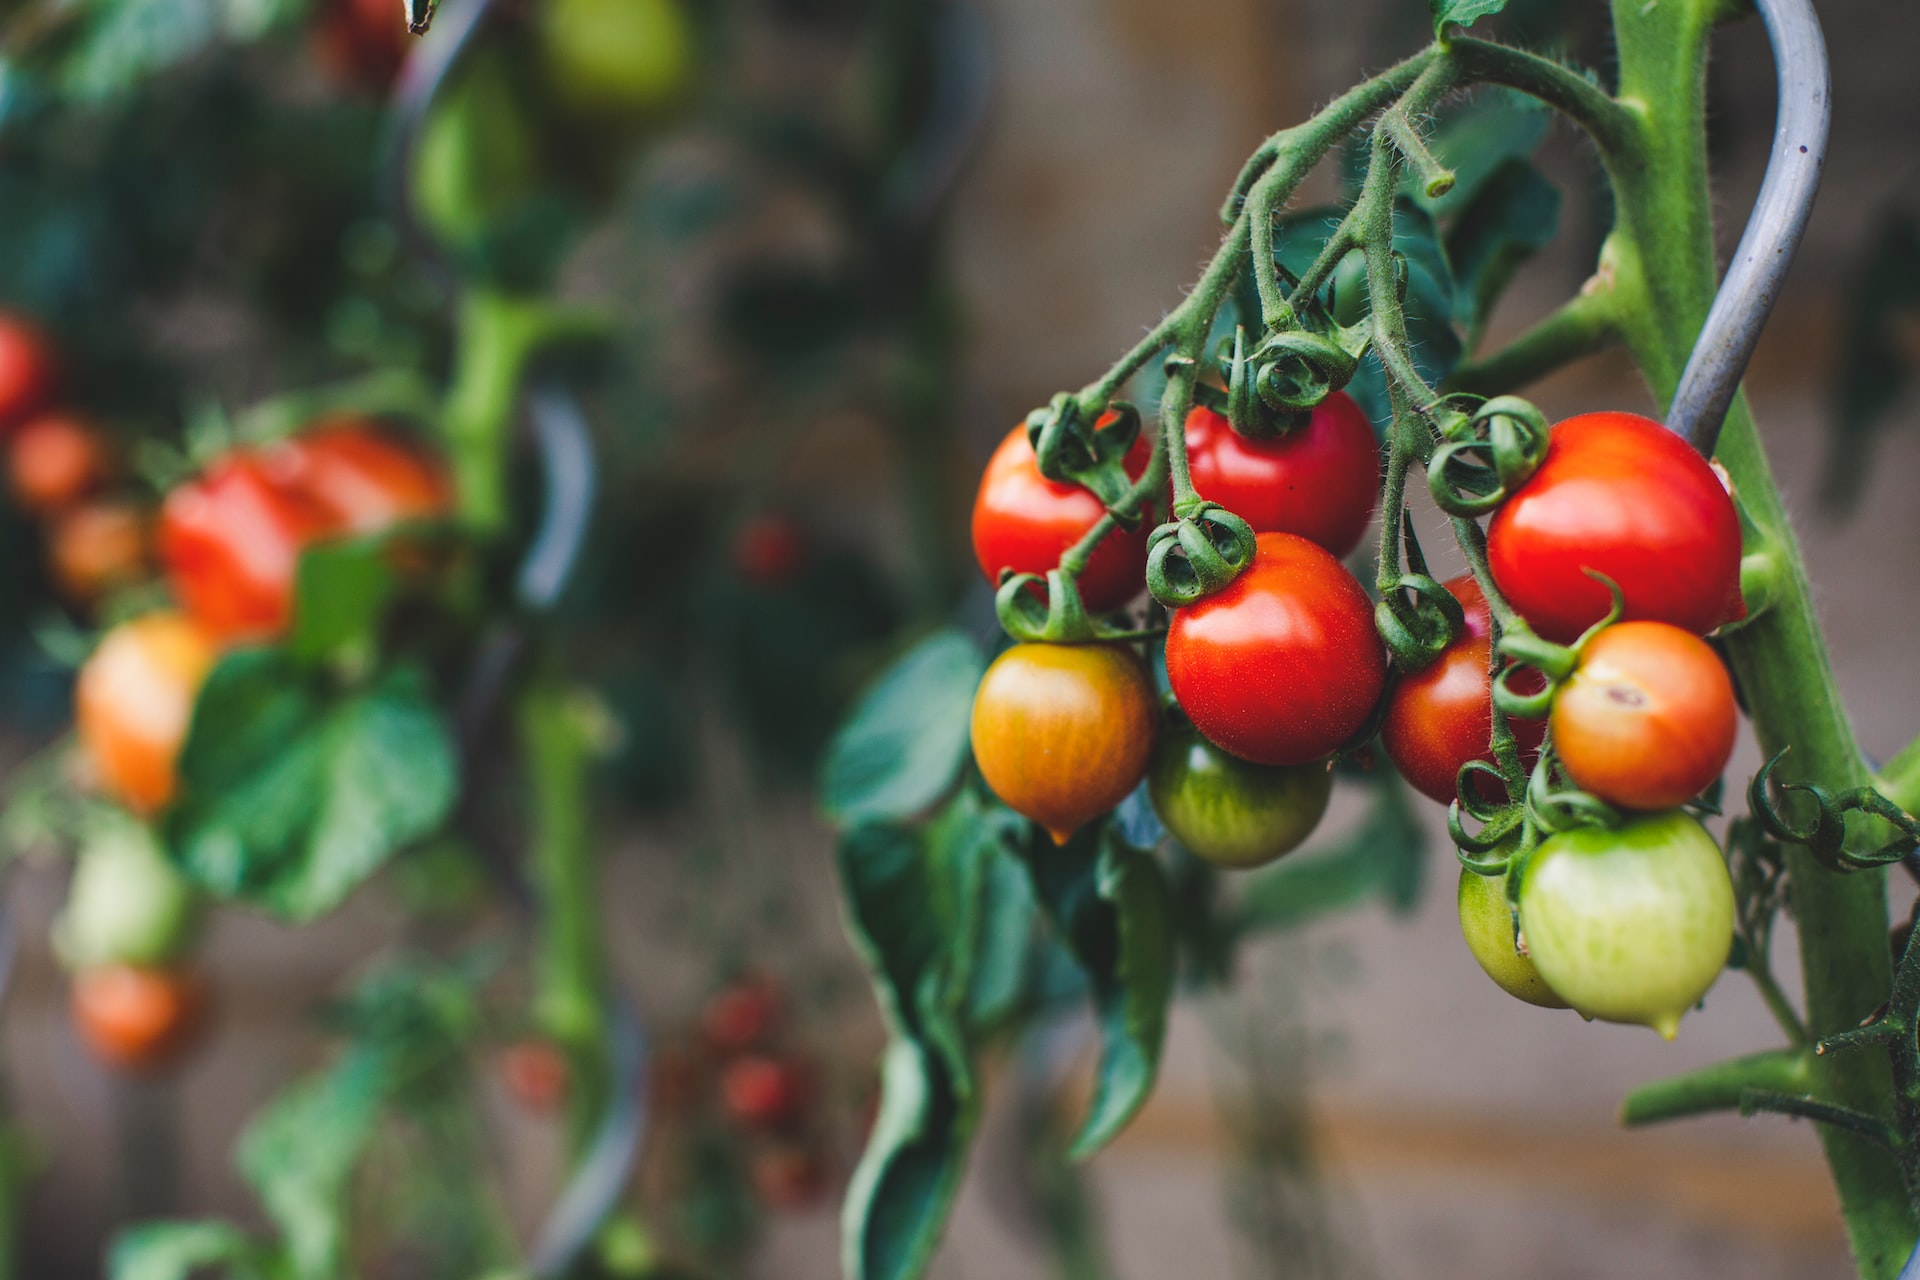 Uprawa pomidorów na balkonie w mieście: Nowy eko trend czy stały element miejskiej zieleni?